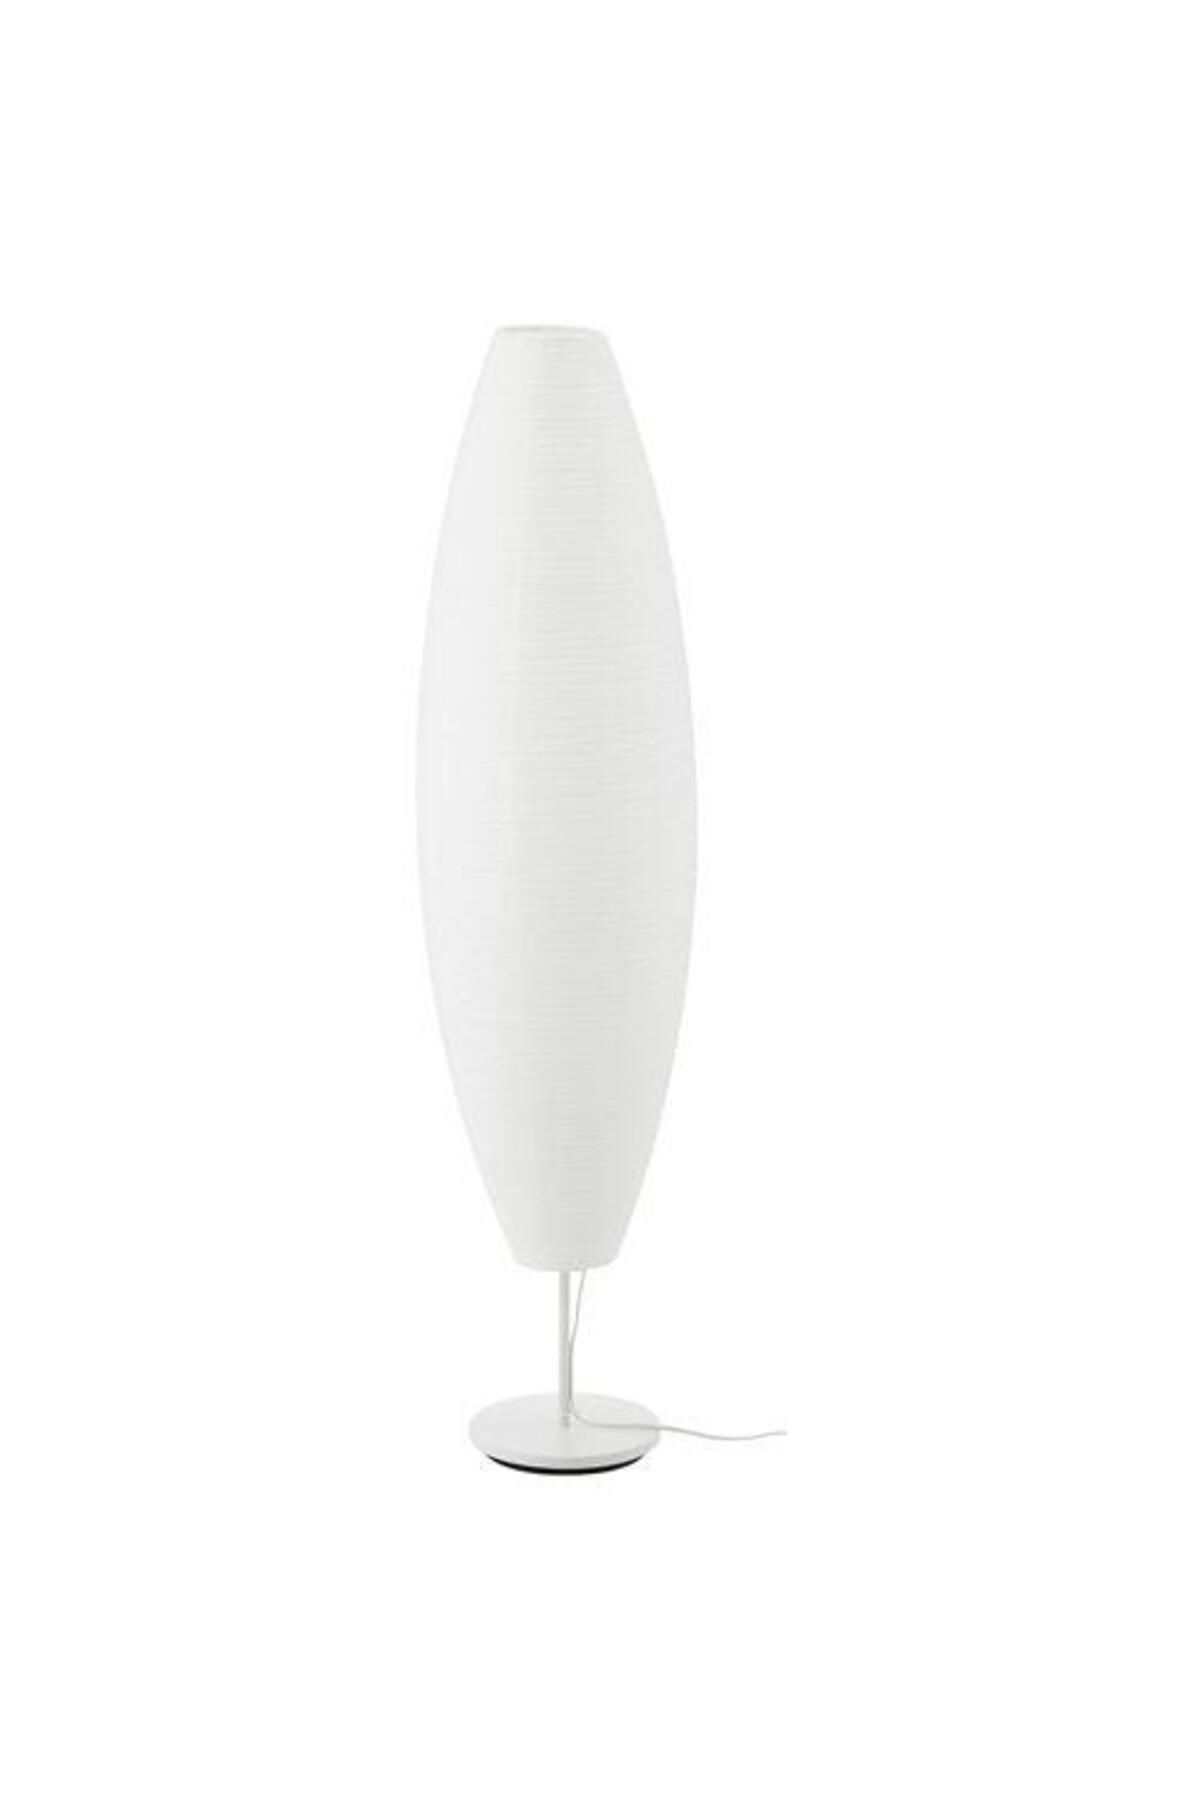 IKEA Yer Lambası, Natürel Beyaz 128 Cm Meridyendukkan 40 W,genişlik 33cm Lambader